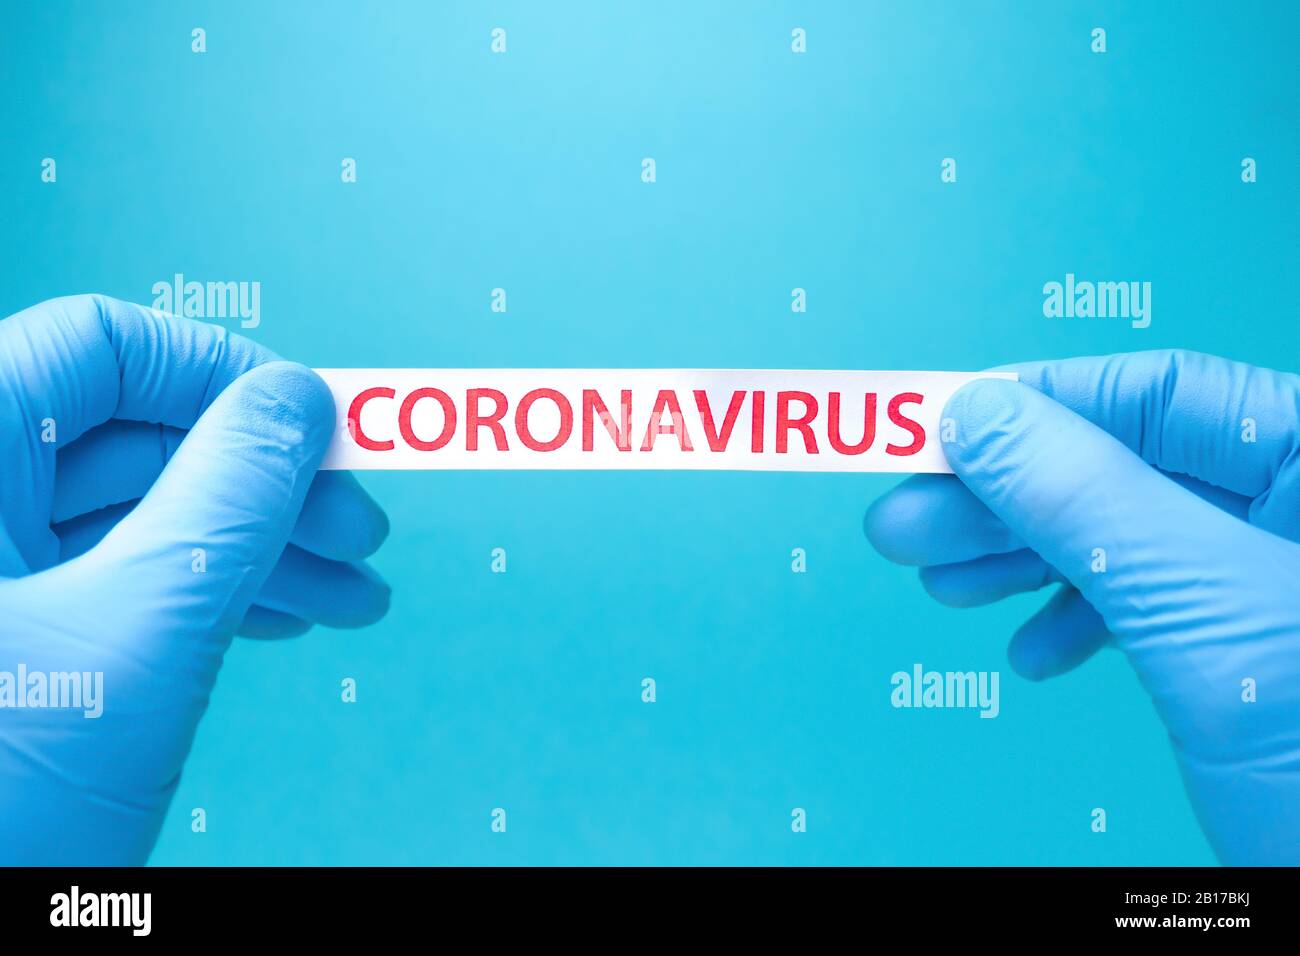 Vaccino contro il coronavirus nCoV per il virus COVID 2019-nCoV. Eliminazione Di Coronavirus. Interrompere la diffusione di Coronavirus. Concetto di coronavirus 2019-nCoV COVID. Epidemia, vaccini salvare la vita. Contesto sanitario Foto Stock